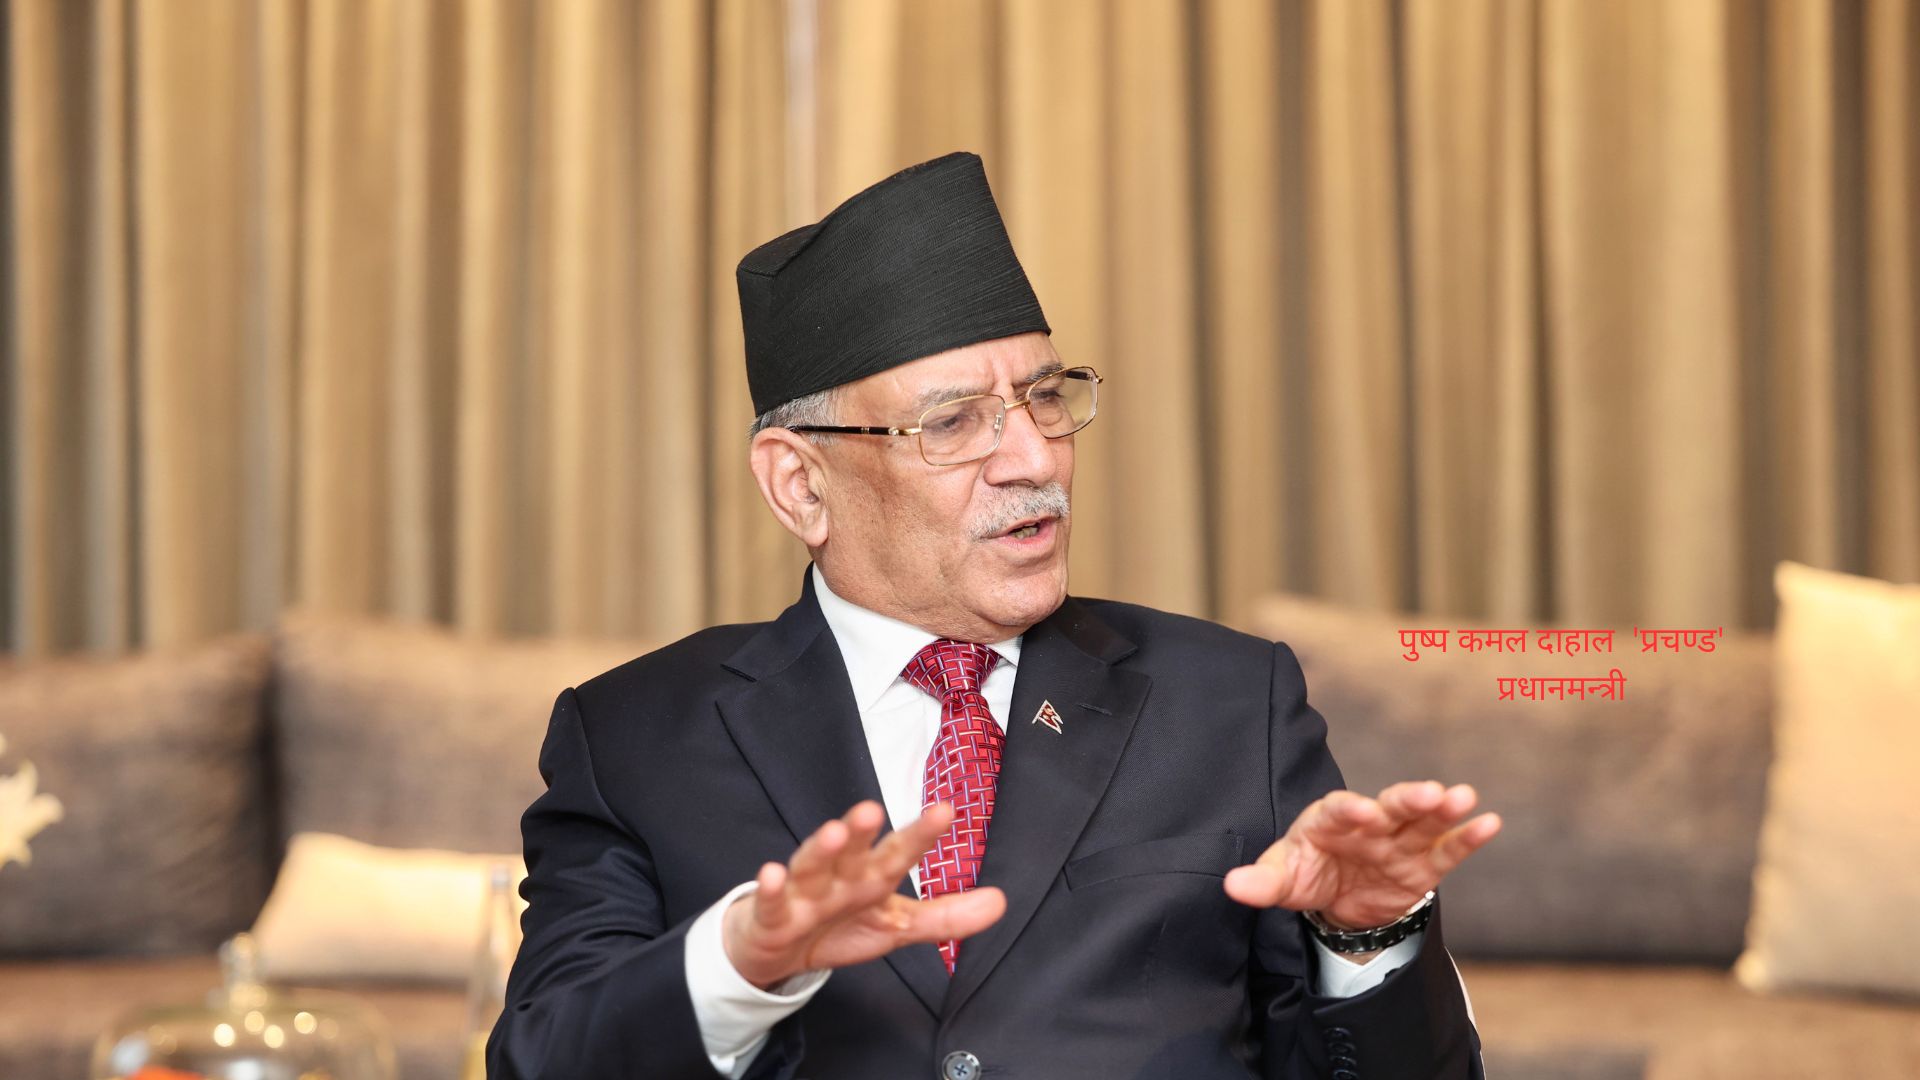 ‘भारतीय प्रधानमन्त्री नेपाल–भारत सम्बन्धका सबै समस्या हल गर्नुपर्छ भन्ने मनस्थितिमा हुनुहुन्छ’